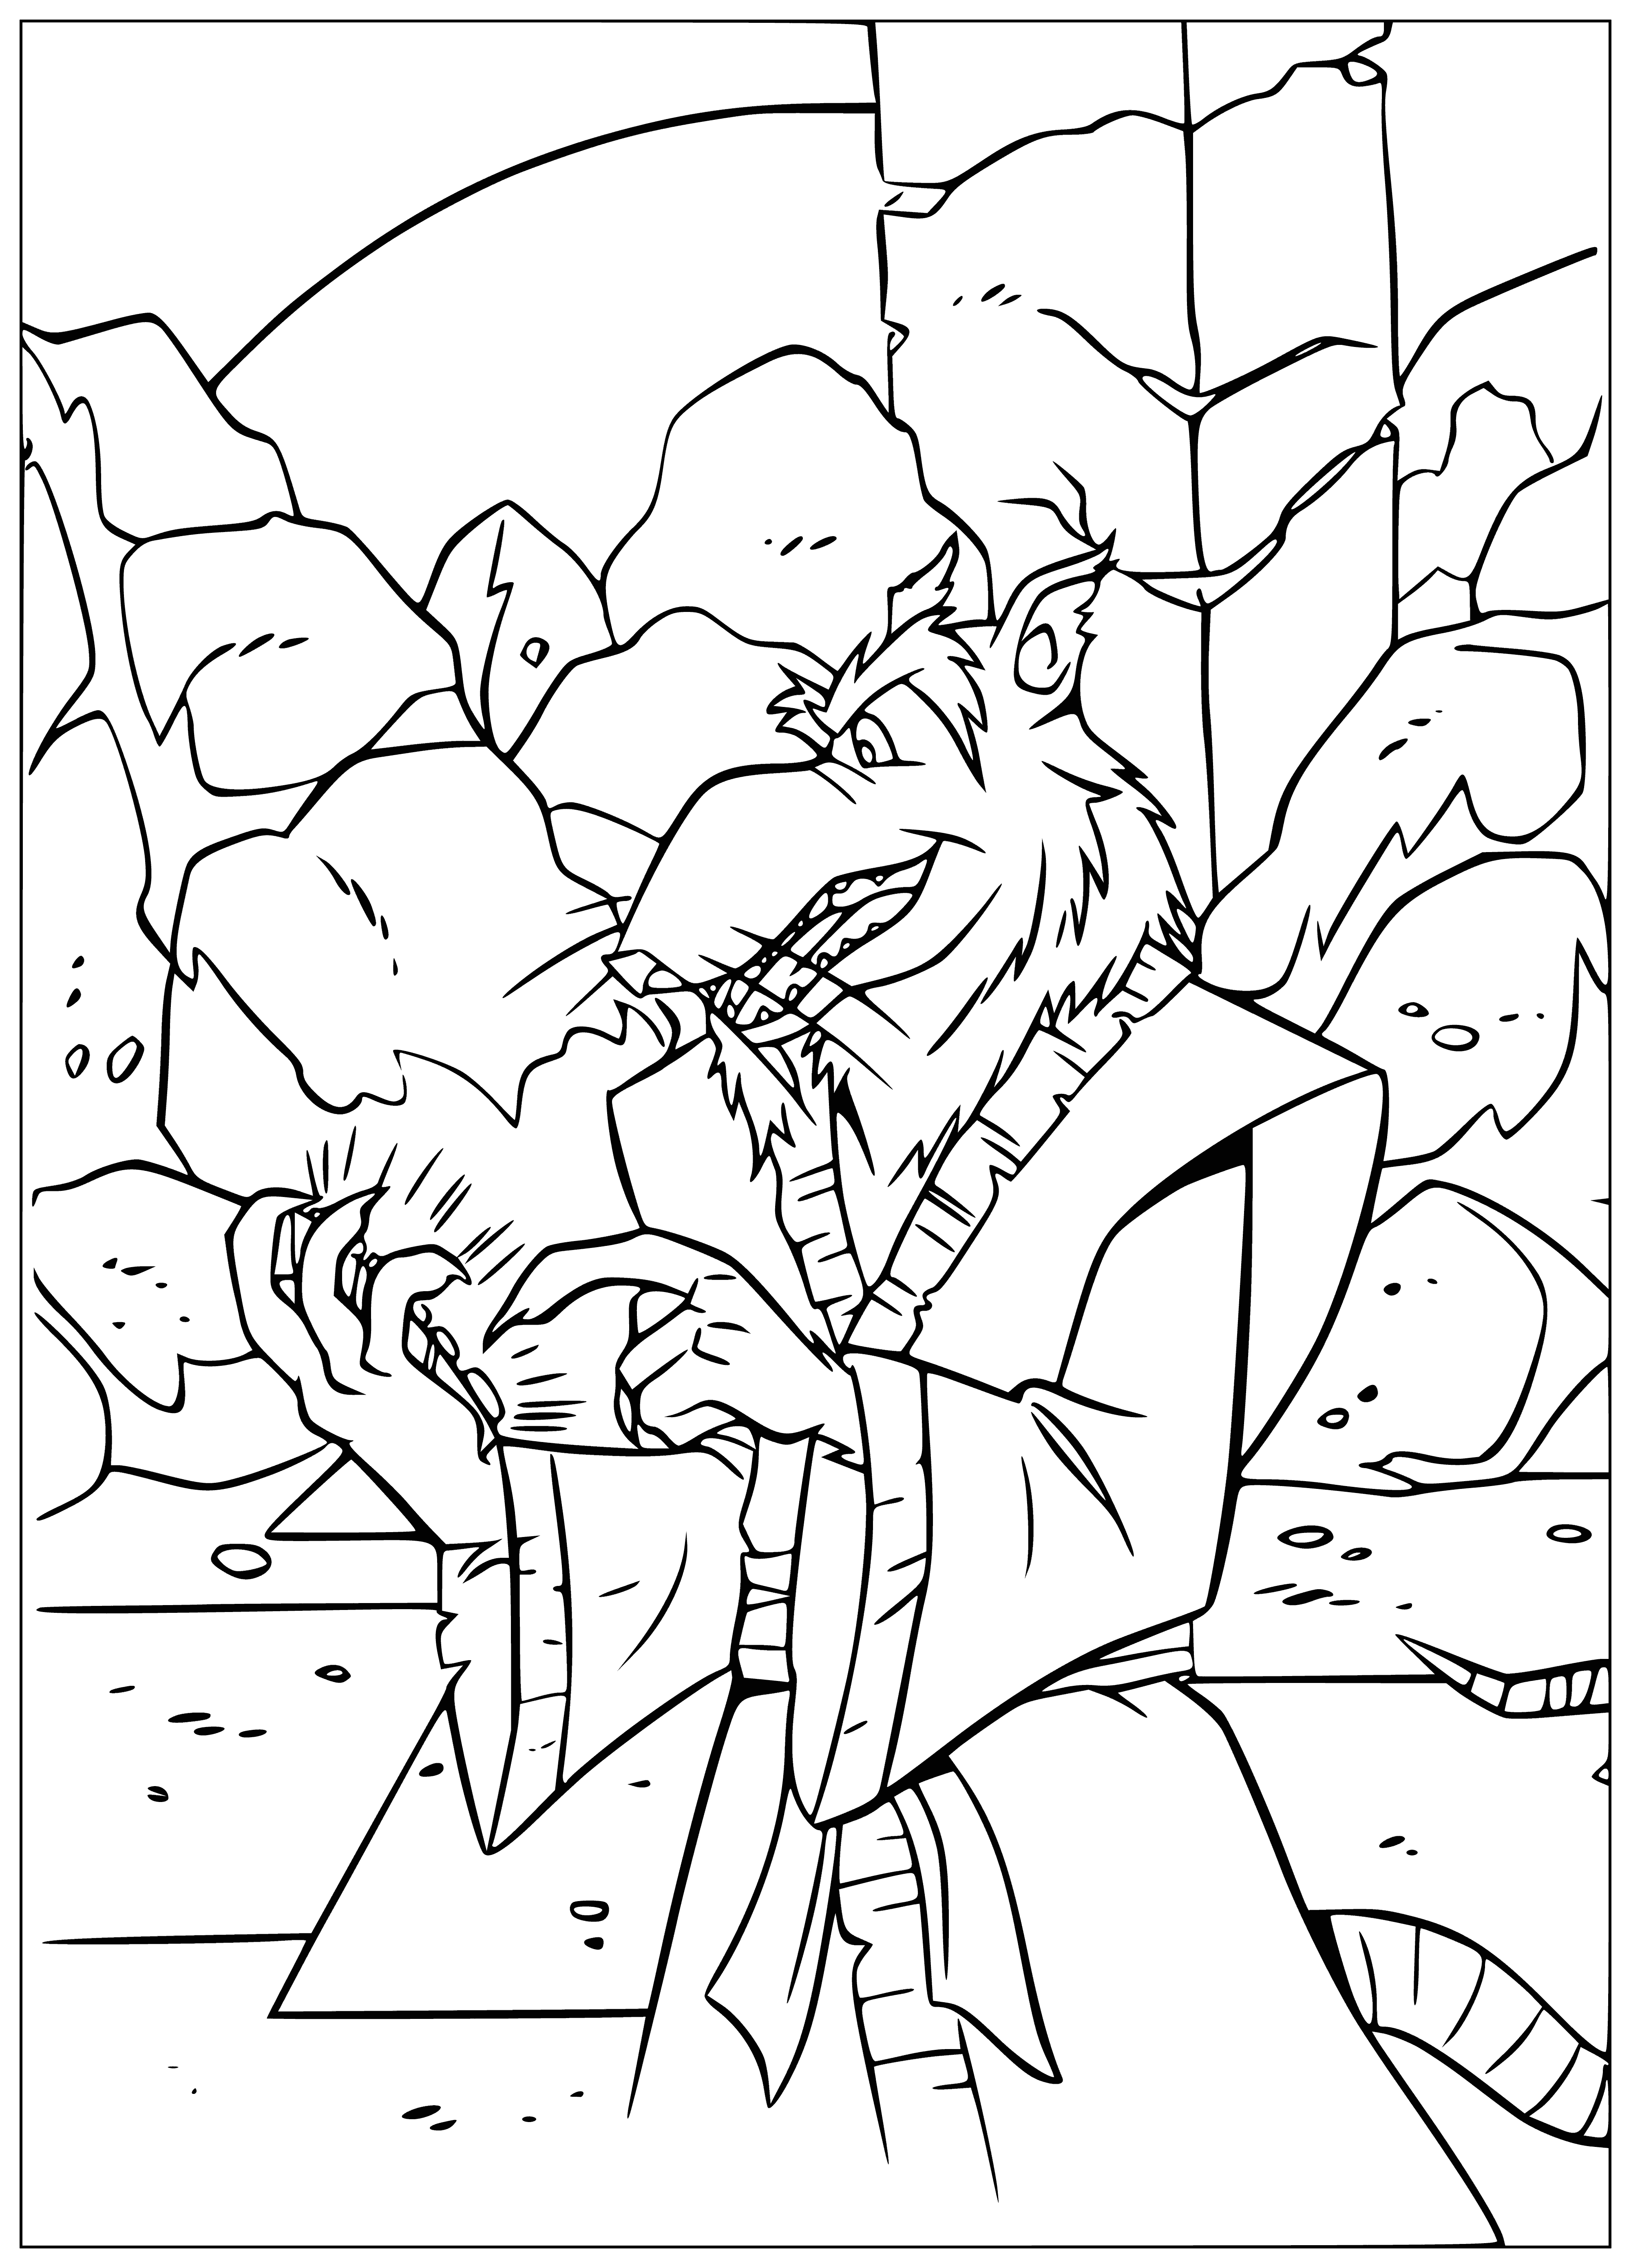 Rat Splinter coloring page